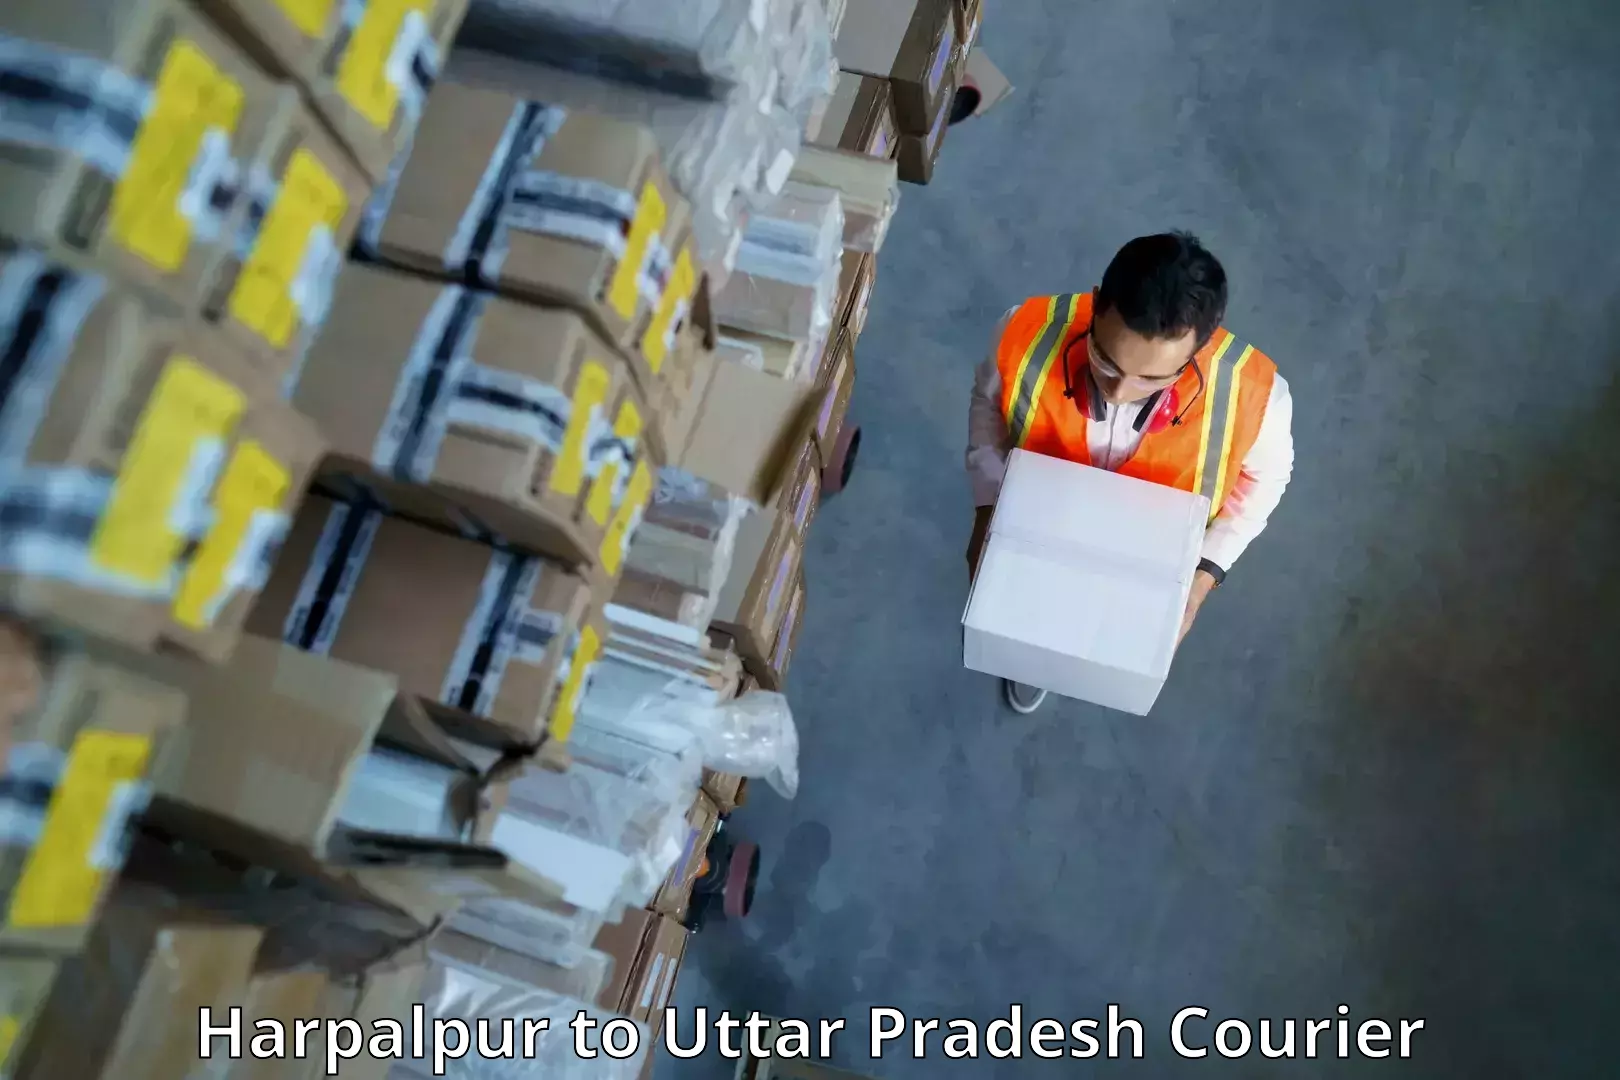 Efficient logistics management Harpalpur to IIT Varanasi